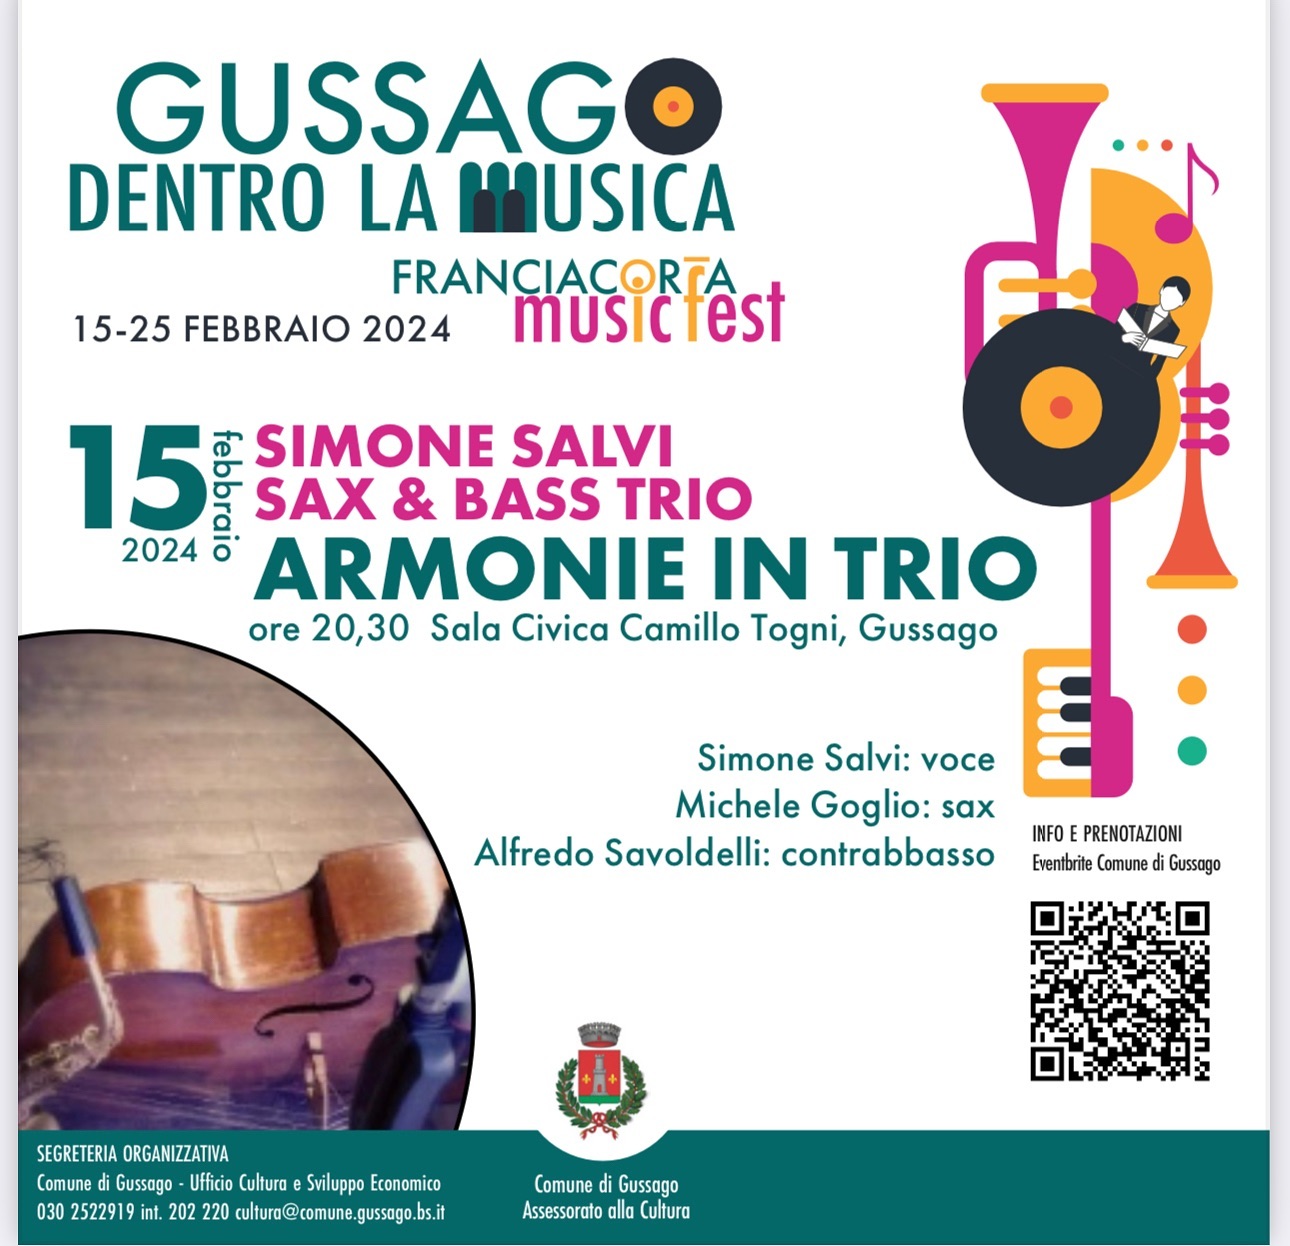 Franciacorta Music Fest - Concerto "Armonie in trio" con Simone Salvi Sax & Bass Trio